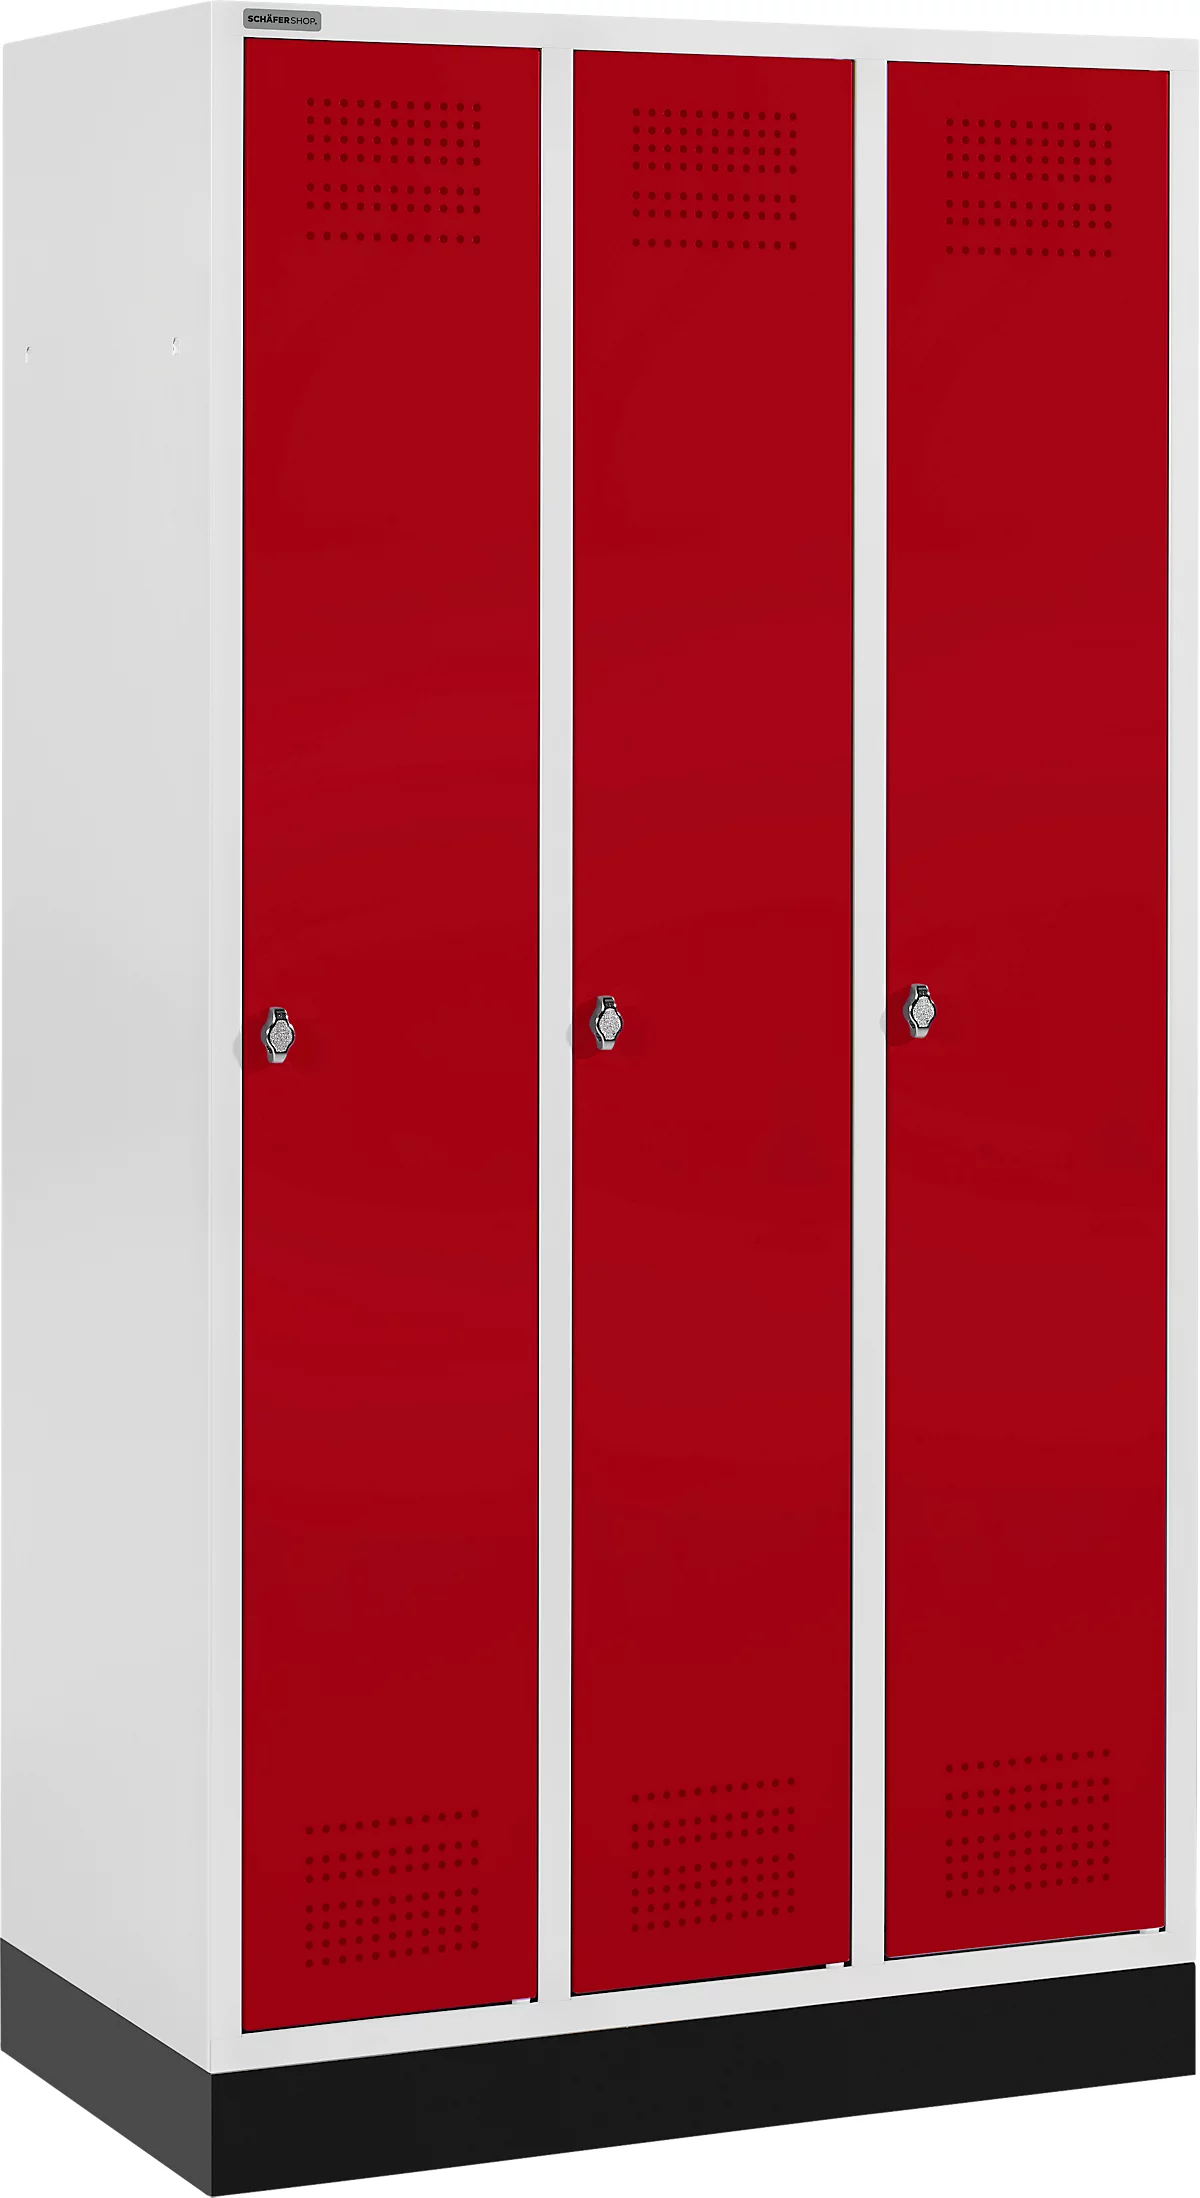 Schäfer Shop Genius Kledinglocker met fitting, 3 compartimenten, veiligheidsdraaigrendelslot, lichtgrijs/rood